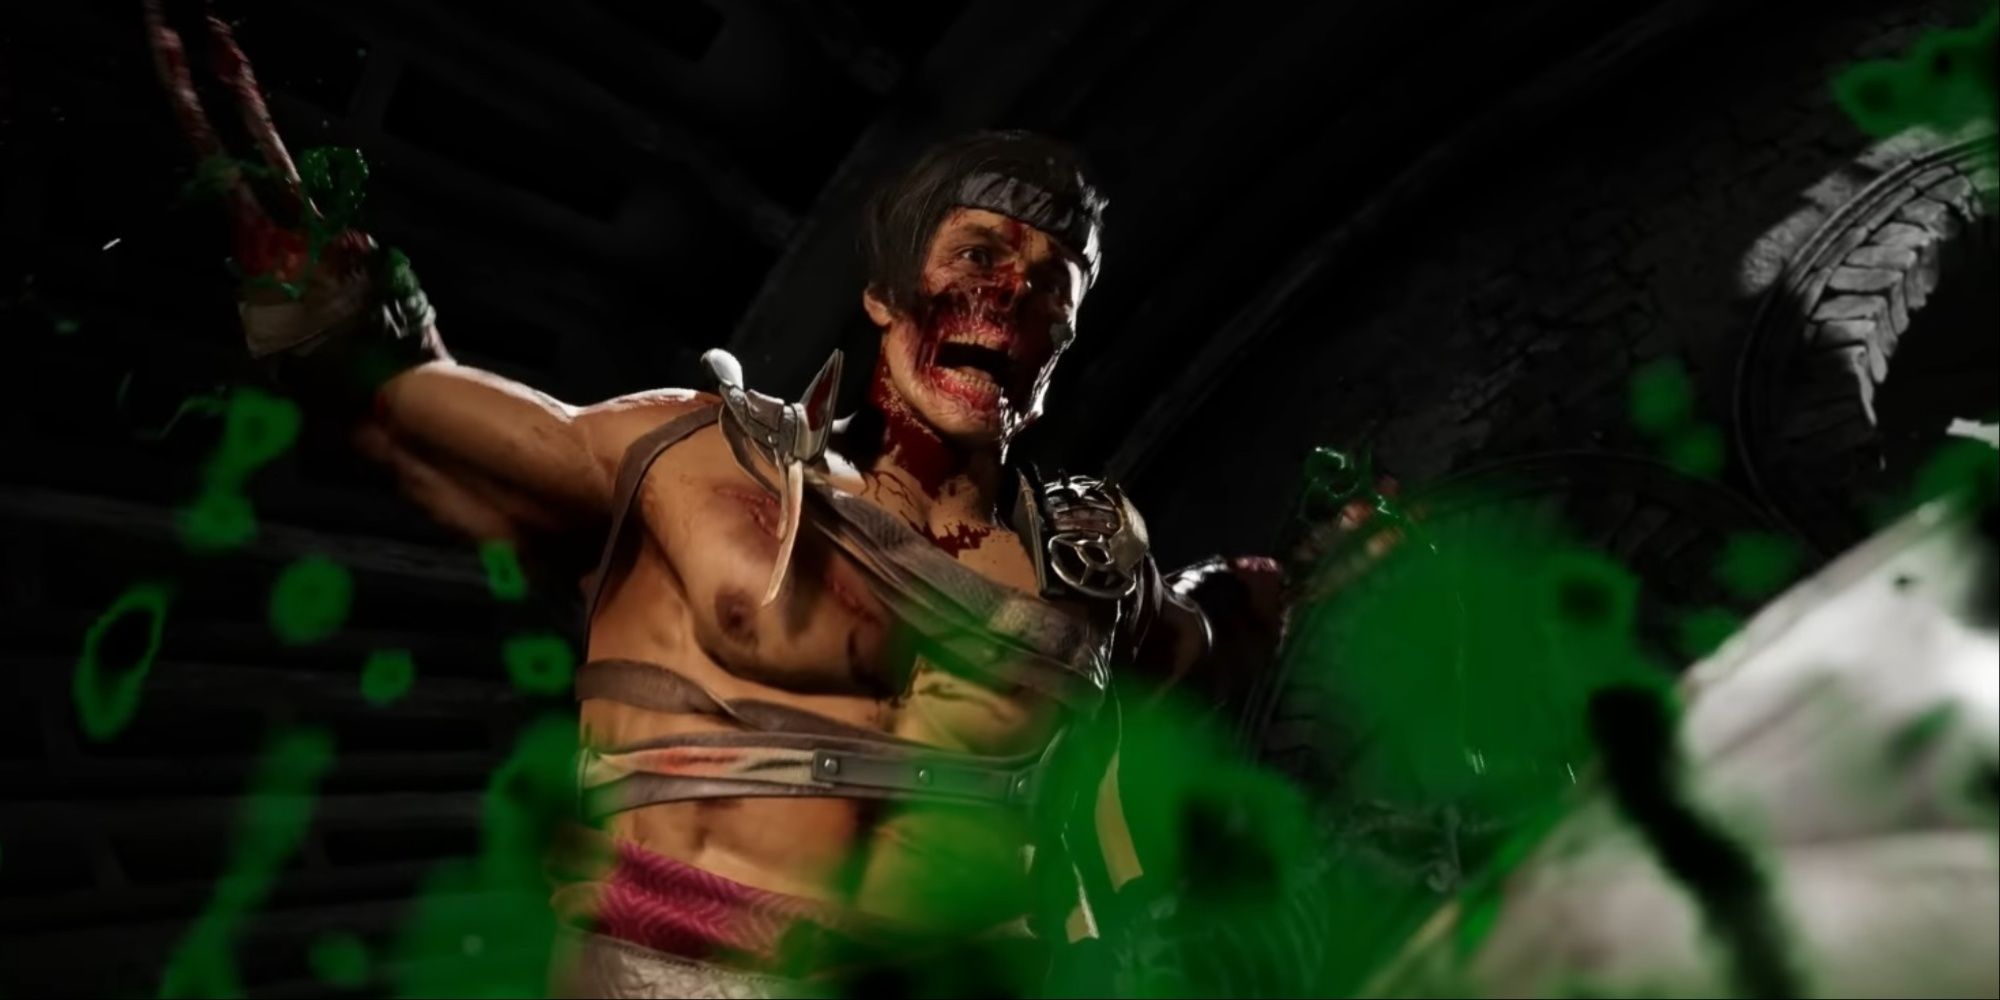 Havik performing his Fatal Blow on Reptile in Mortal Kombat 1